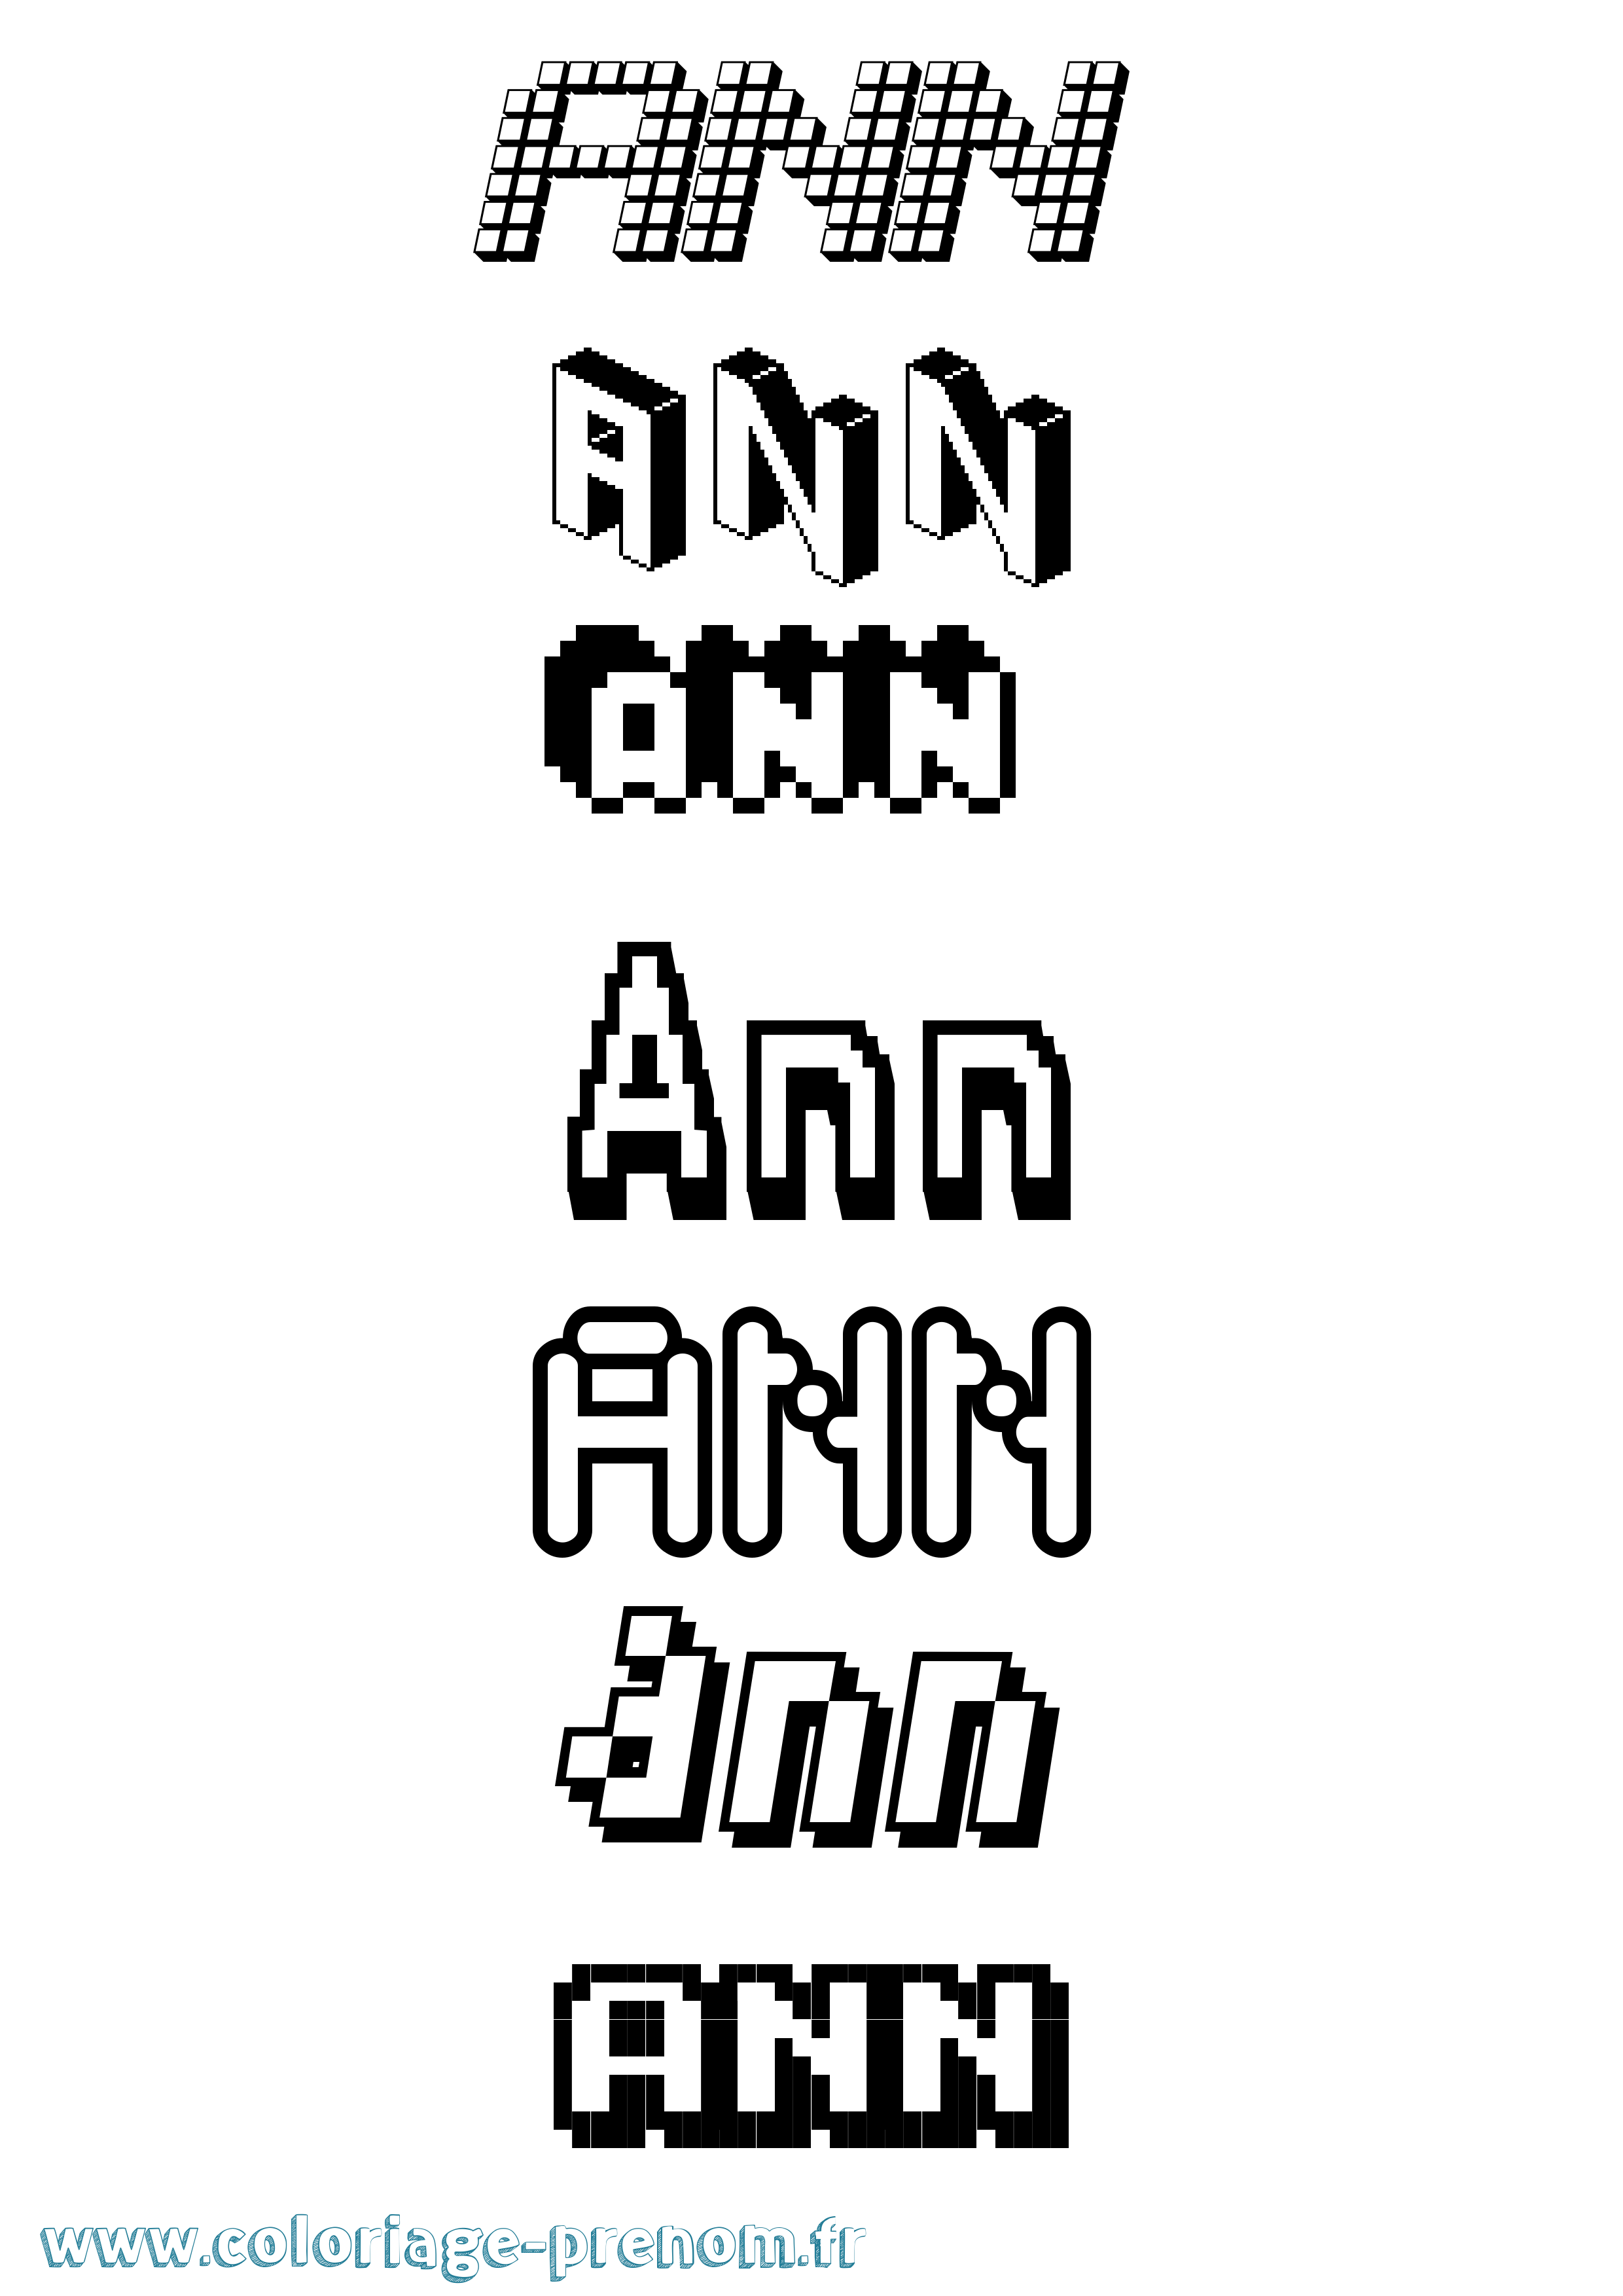 Coloriage prénom Ann Pixel